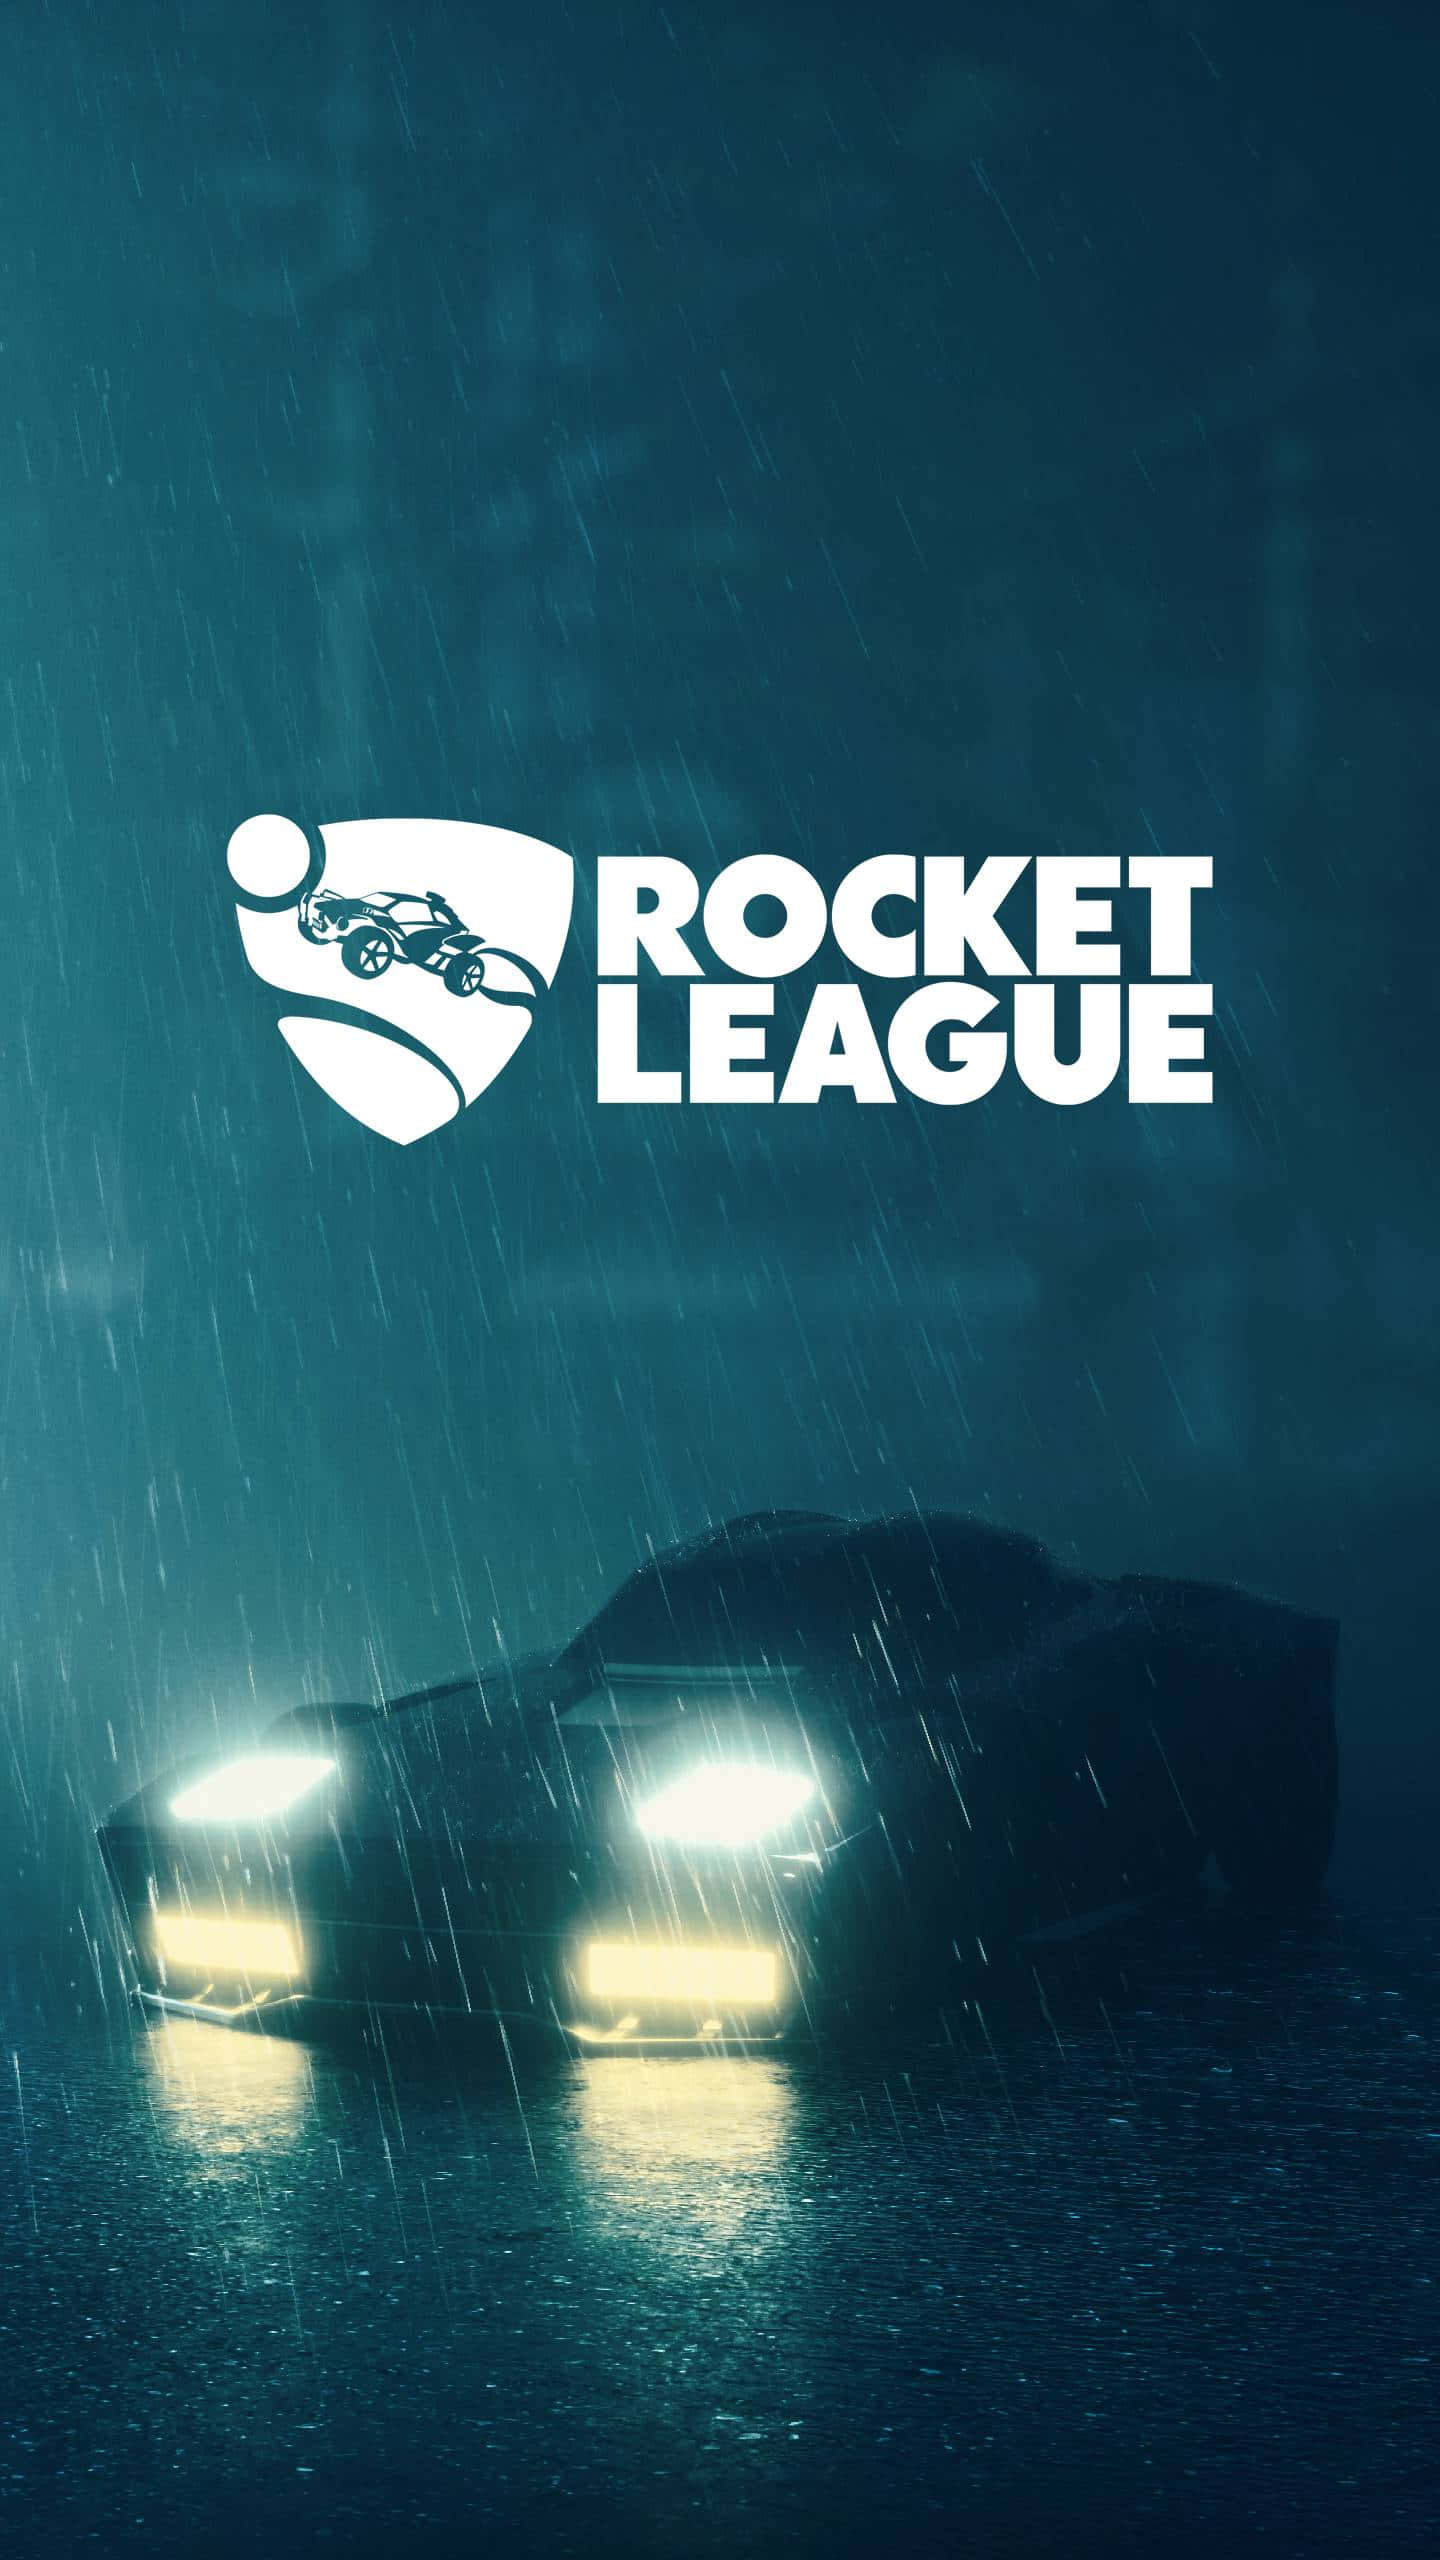 Geupp Din Motor Och Gör Mål I Rocket League!